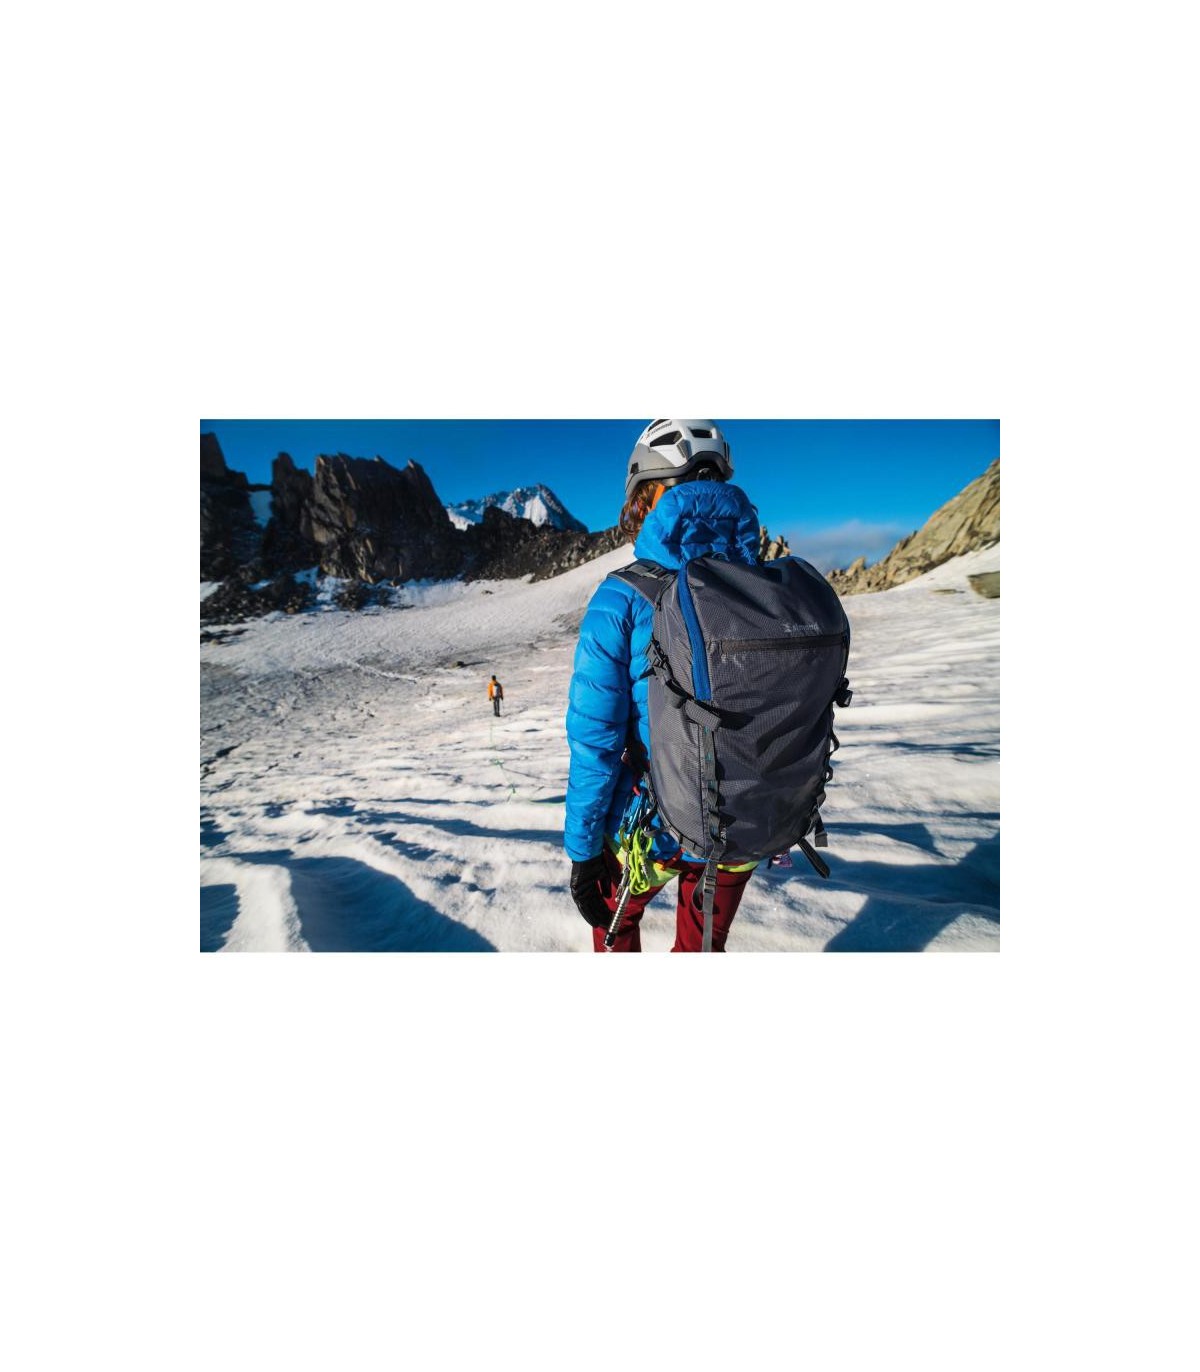 خرید اینترنتی کوله پشتی کوهنوردی و کمپینگ حرفه ای برند دکتلون اصل &#10003; تضمین اورجینال &#10003; ارسال رایگان